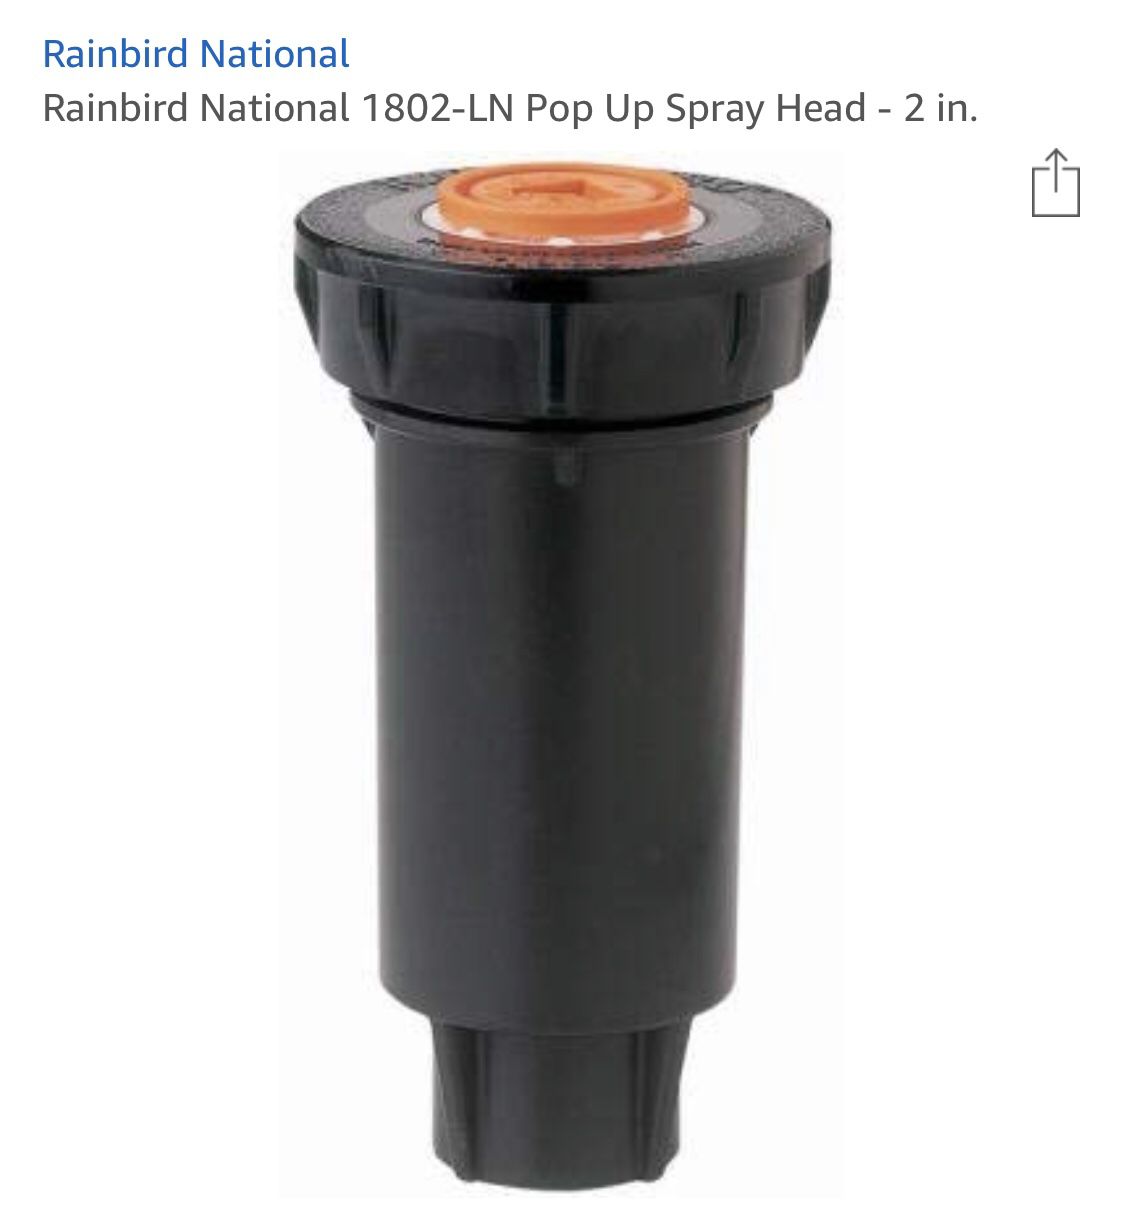 22 Rain bird pop up sprinklers